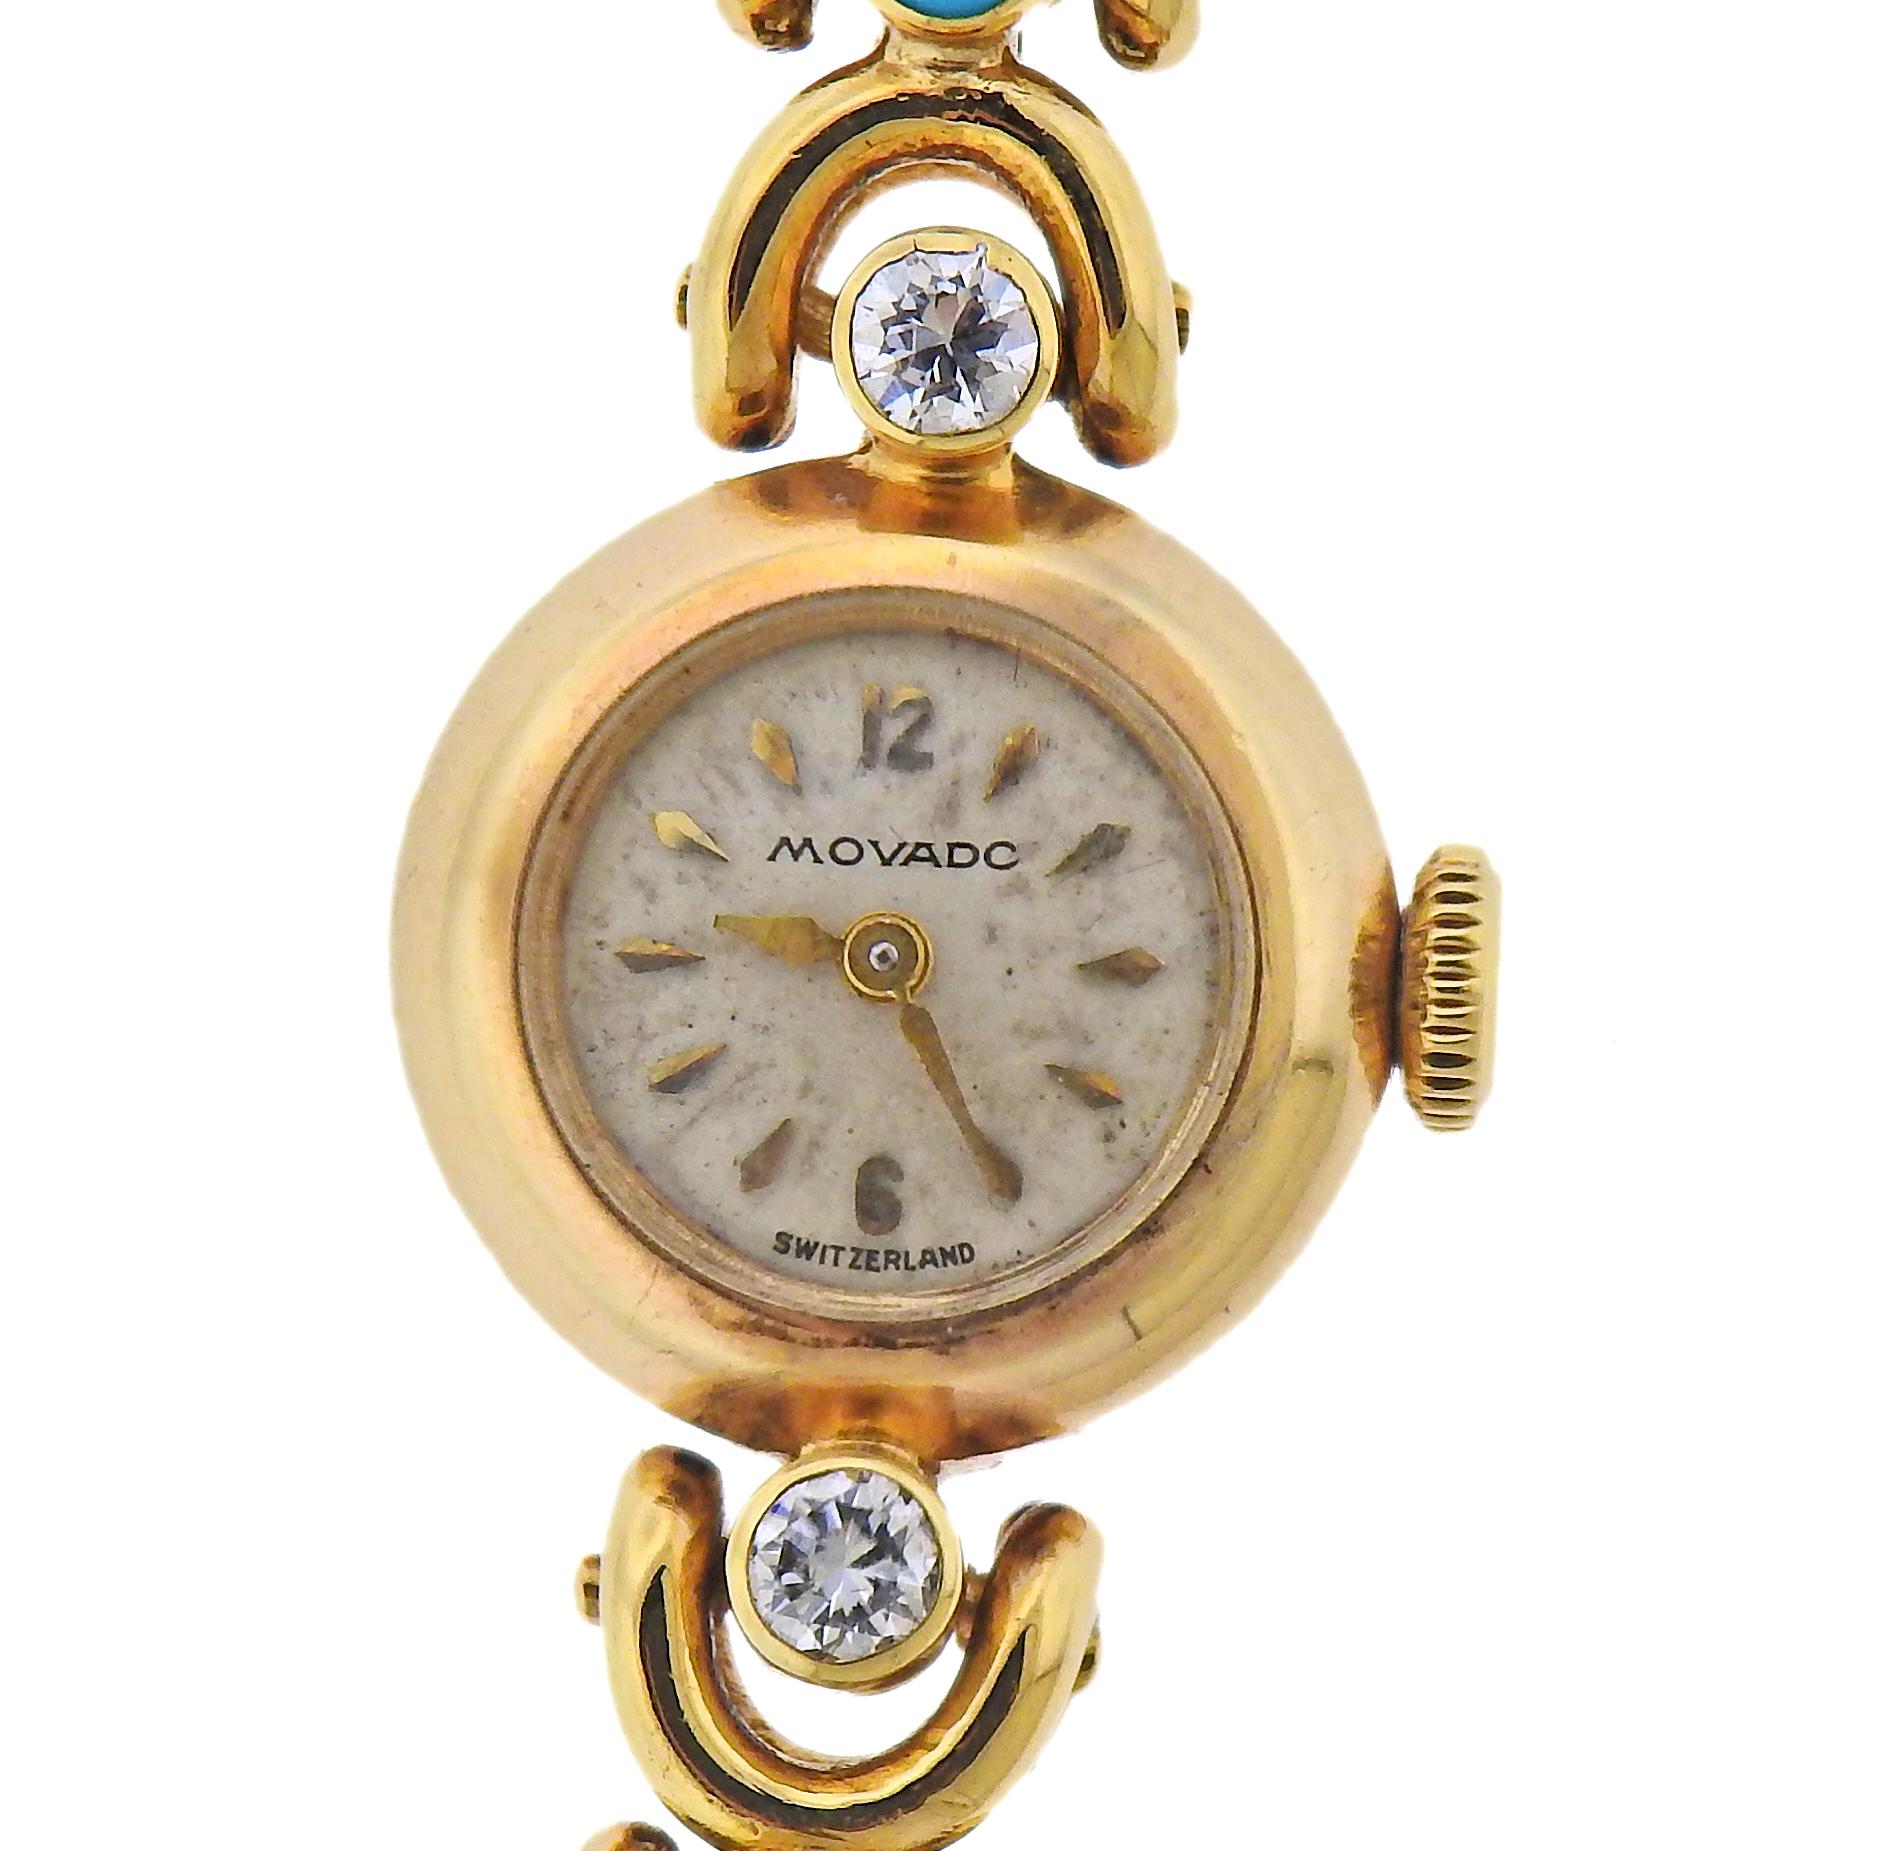 Montre Movado vintage du milieu du siècle avec un bracelet Van Cleef & Arpels, orné d'environ 1,20cts en diamants et turquoise. Boîtier - 15 mm de diamètre hors couronne. Le bracelet mesure 6,75